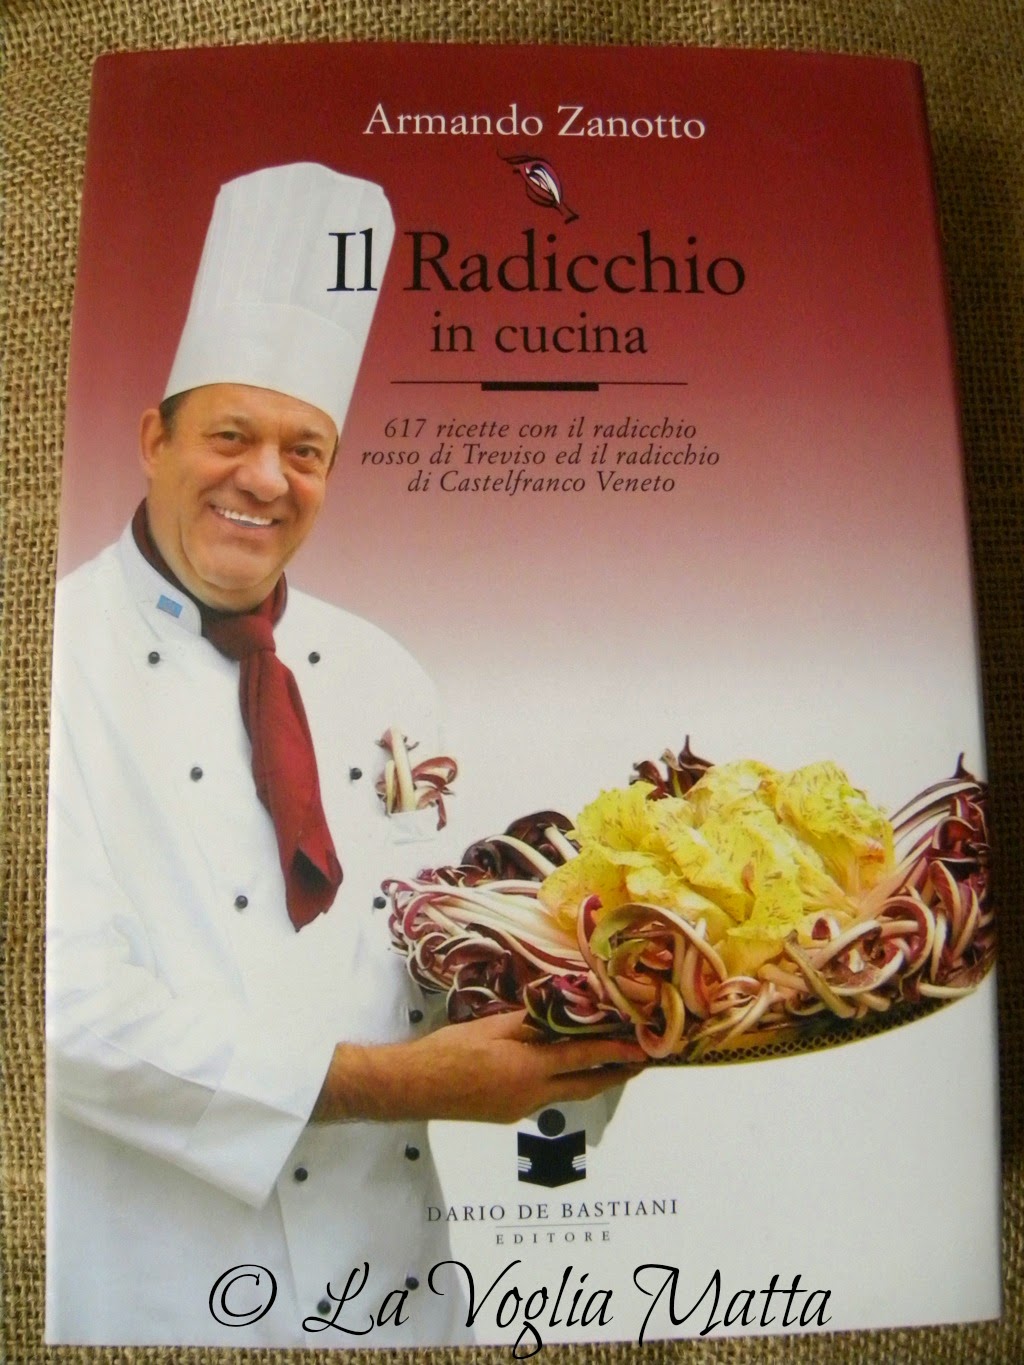 Armando Zanotto "Il radicchio in cucina "